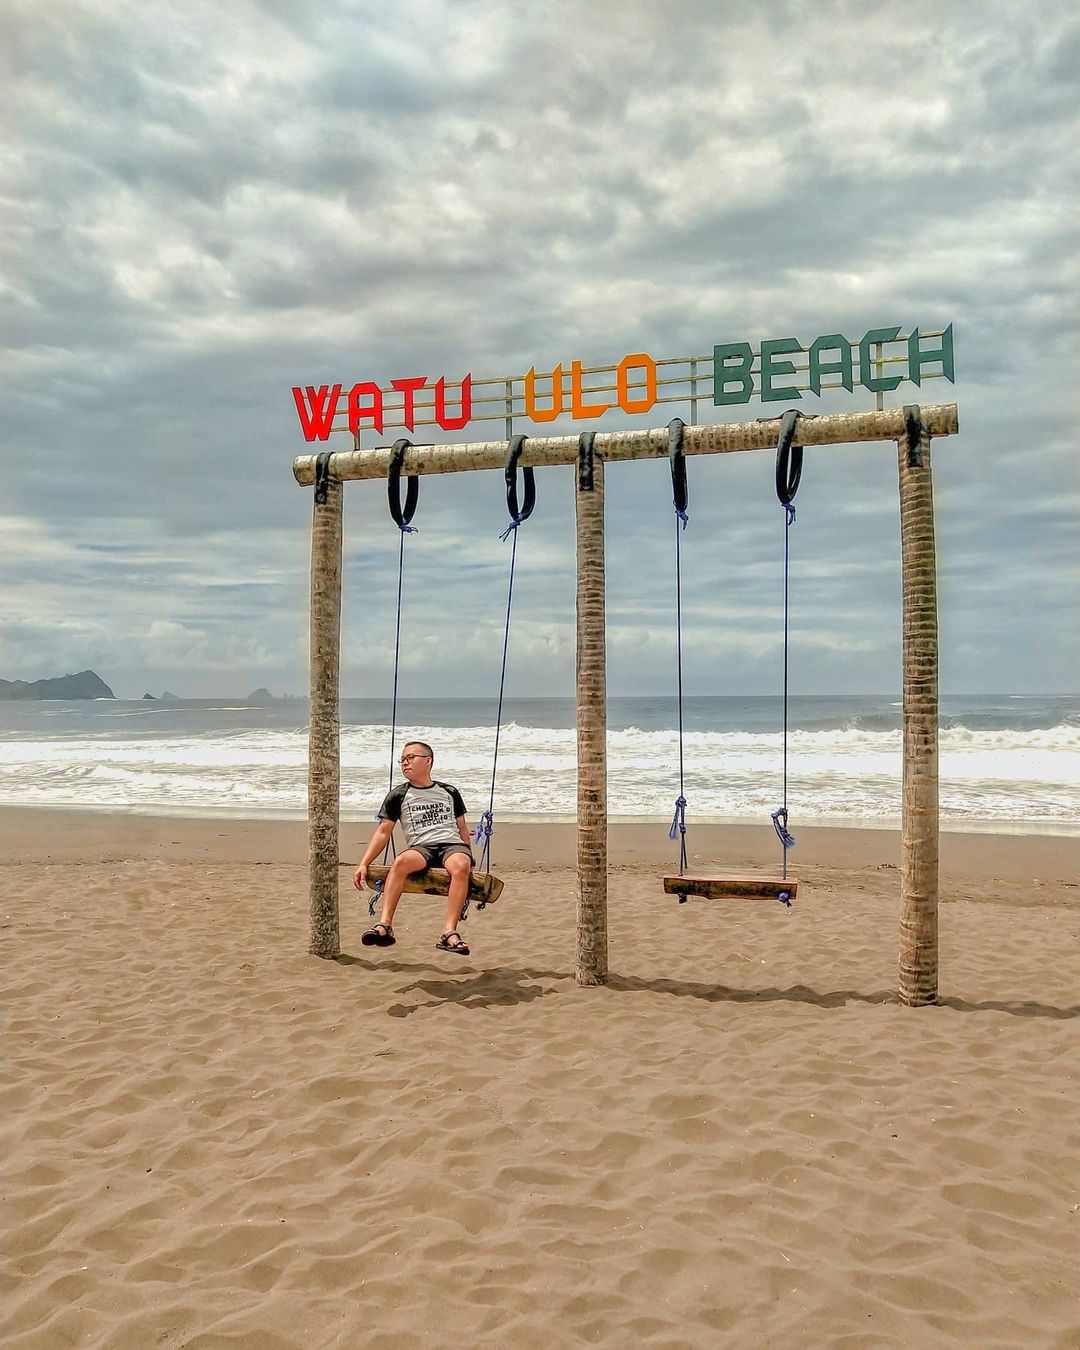 Pantai Watu Ulo